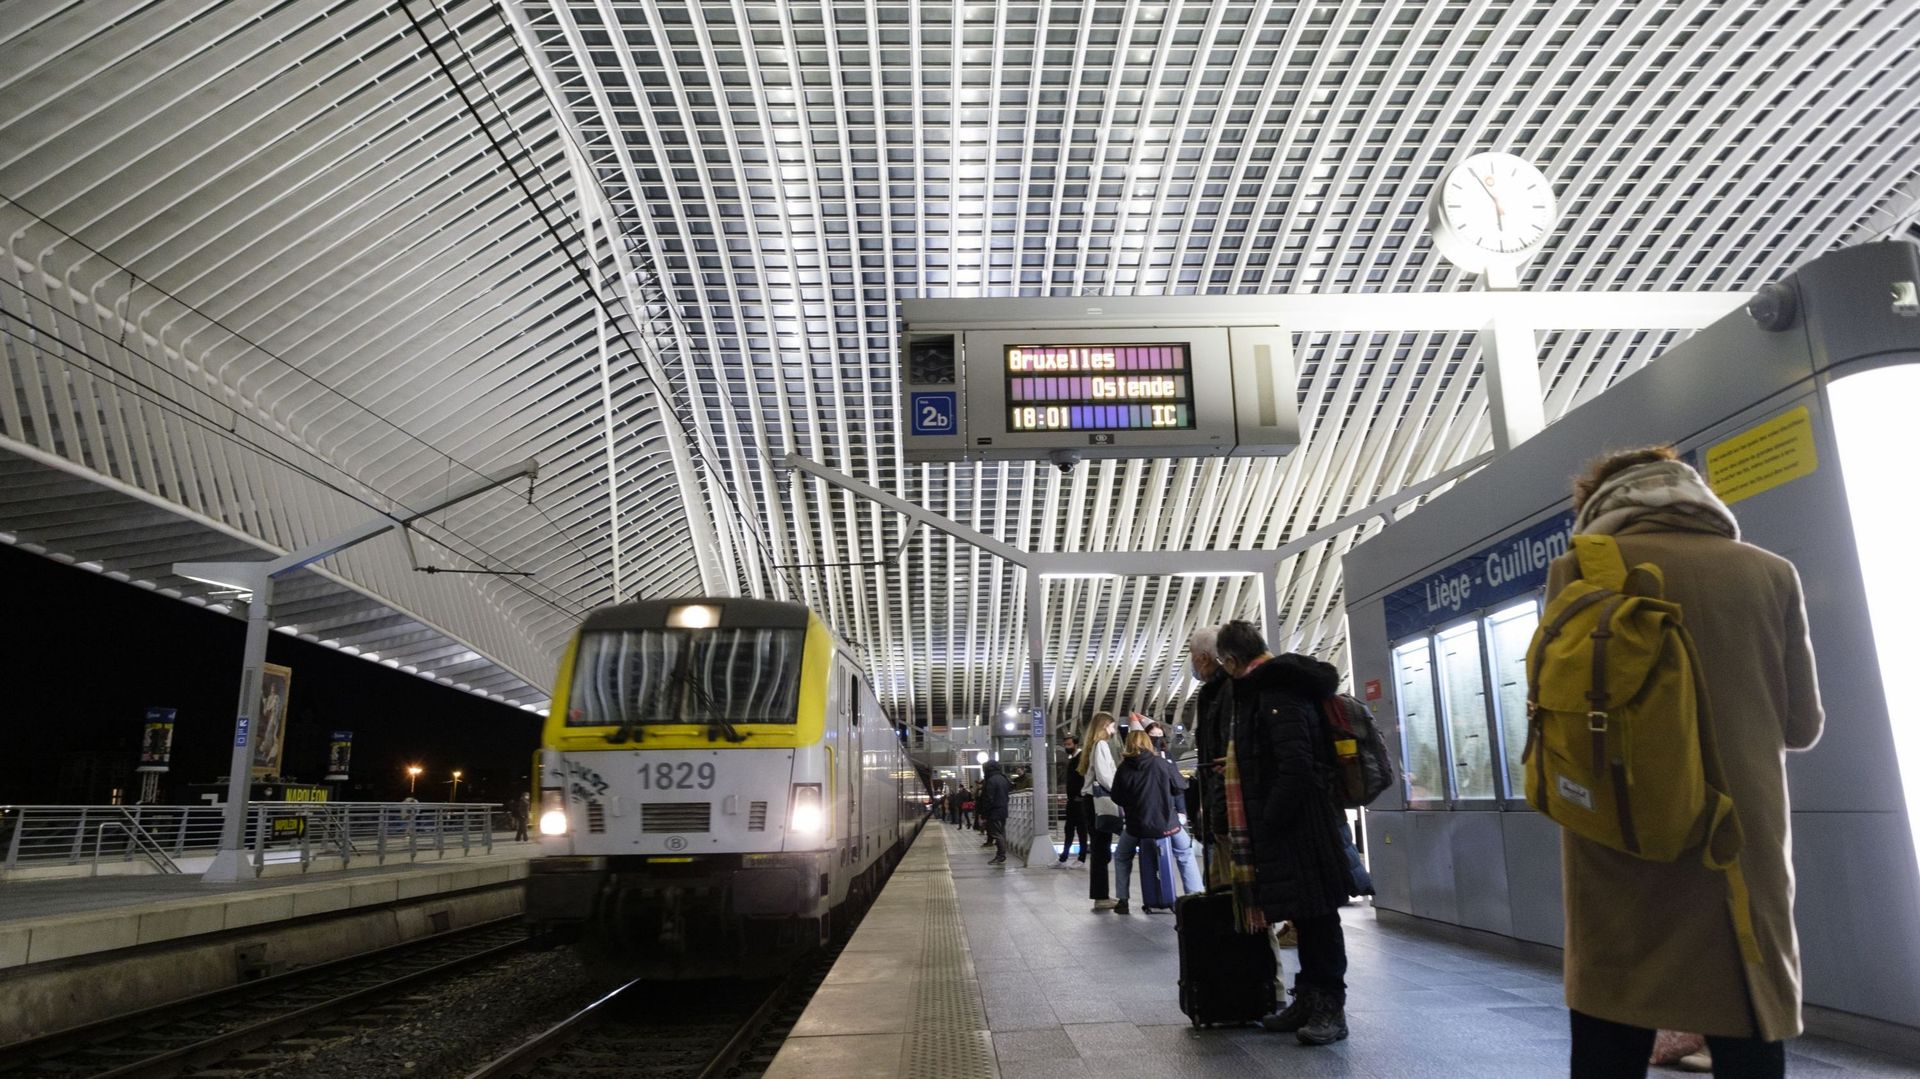 Des voyageurs attendent le train entre Liège Guillemin et Bruxelles, le 20 janvier 2022 à Liège, en Belgique.